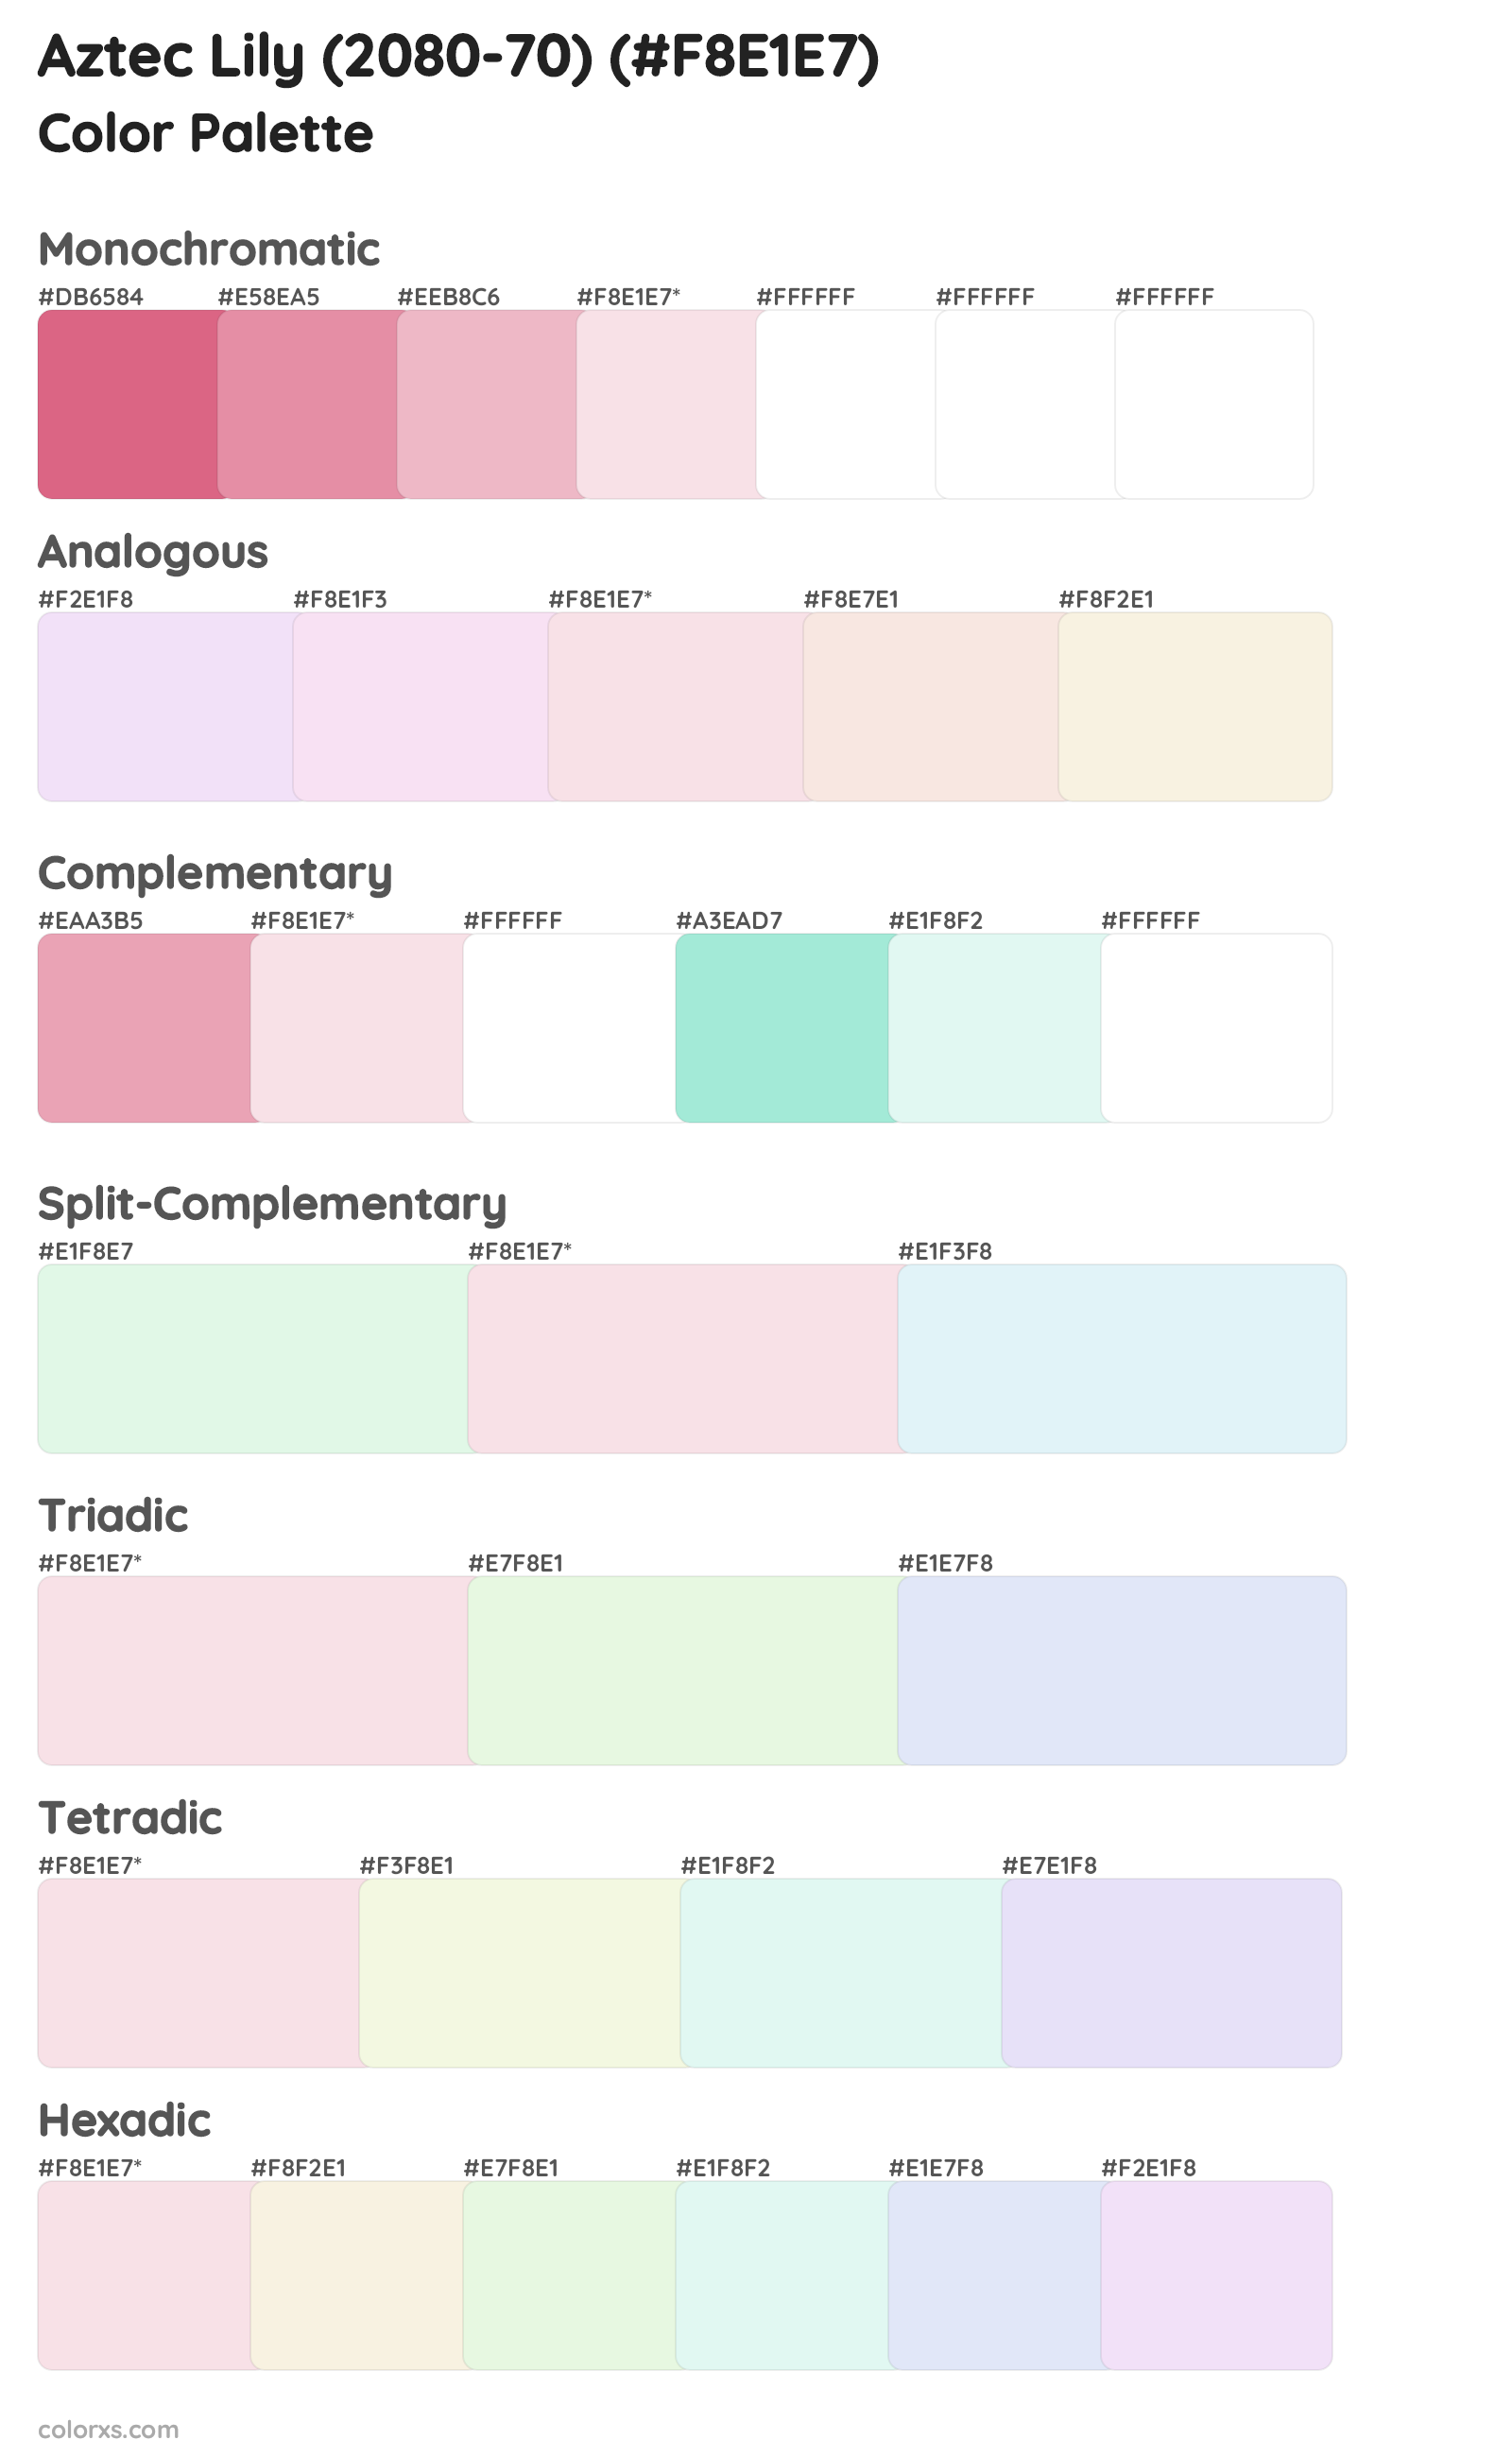 Aztec Lily (2080-70) Color Scheme Palettes